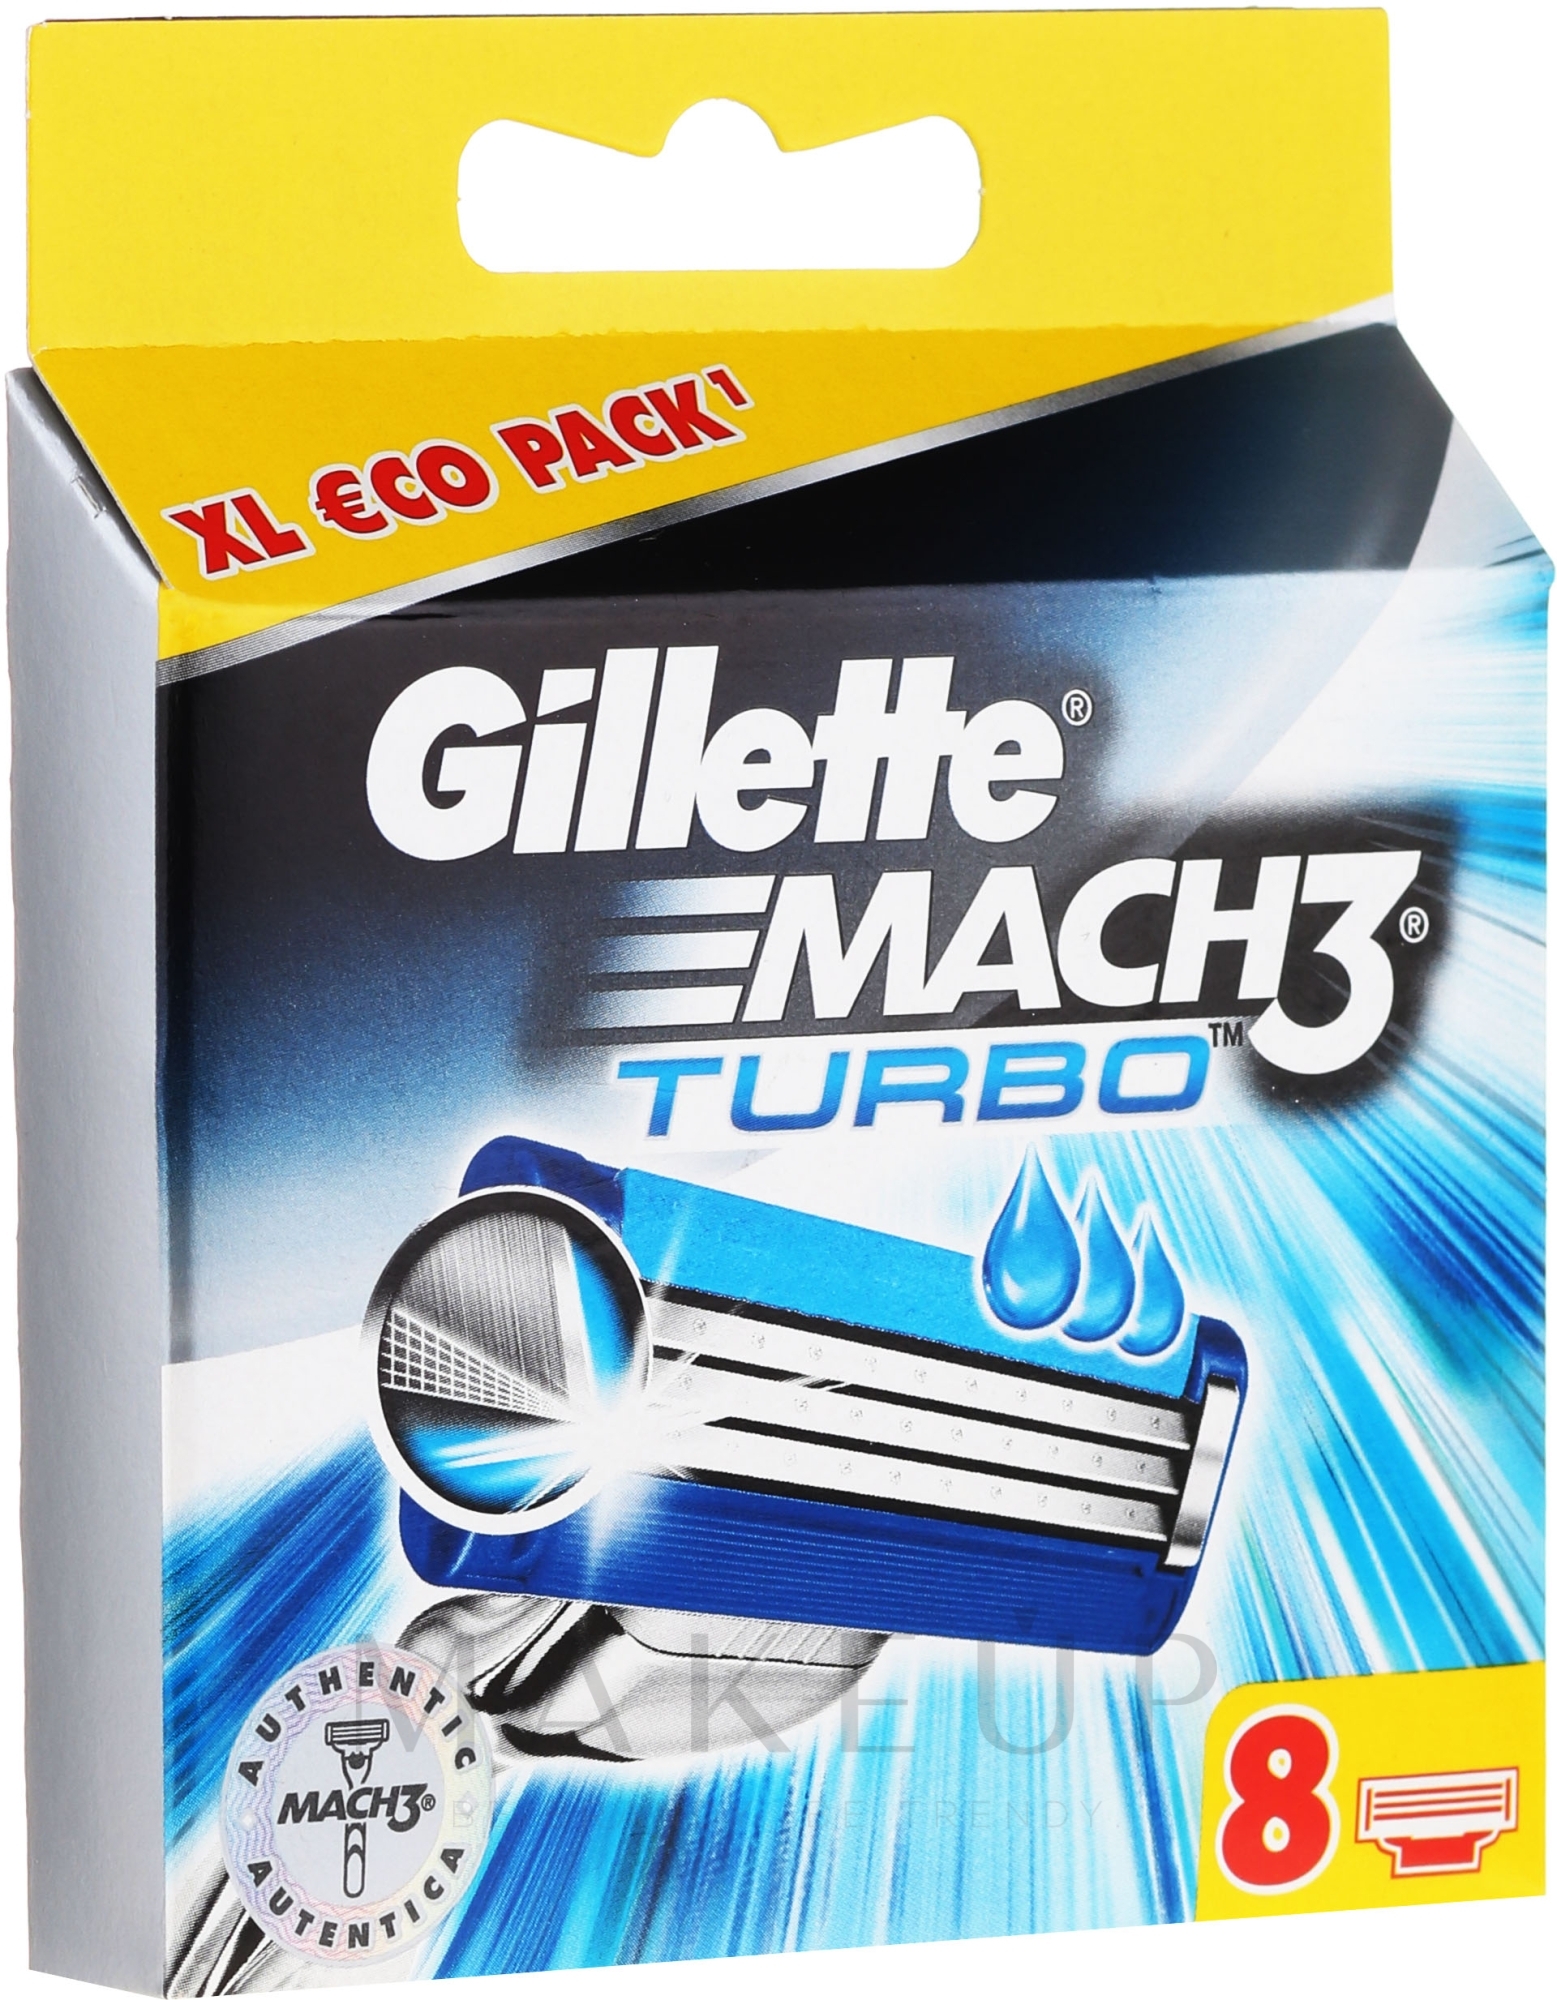 Gillette Fusion ProGlide Ersatzklingen - Gillette Mach3 Turbo — Foto 4 St.